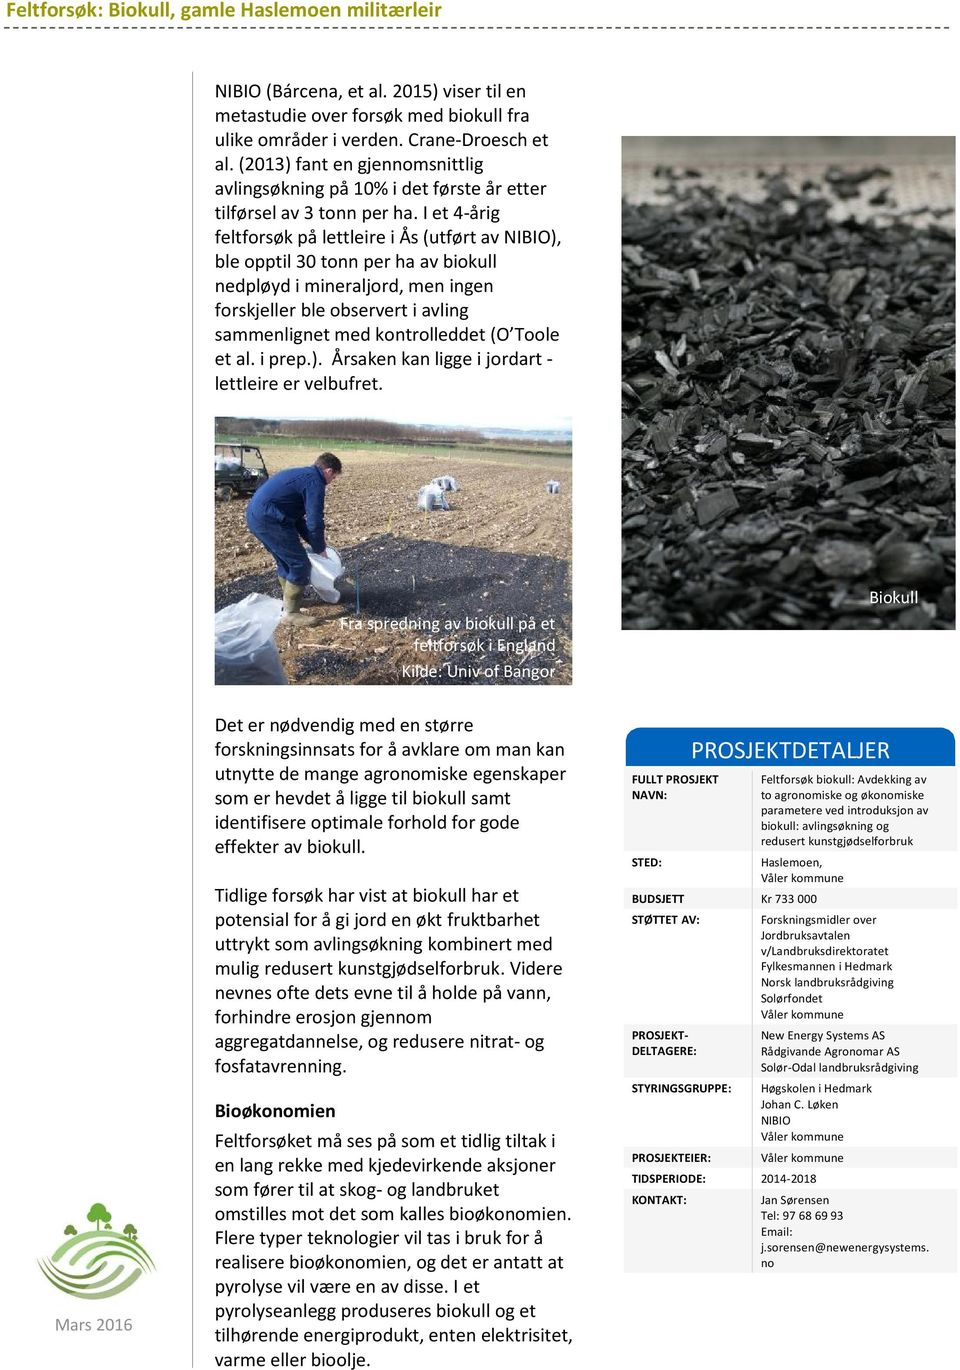 I et 4-årig feltforsøk på lettleire i Ås (utført av NIBIO), ble opptil 30 tonn per ha av biokull nedpløyd i mineraljord, men ingen forskjeller ble observert i avling sammenlignet med kontrolleddet (O